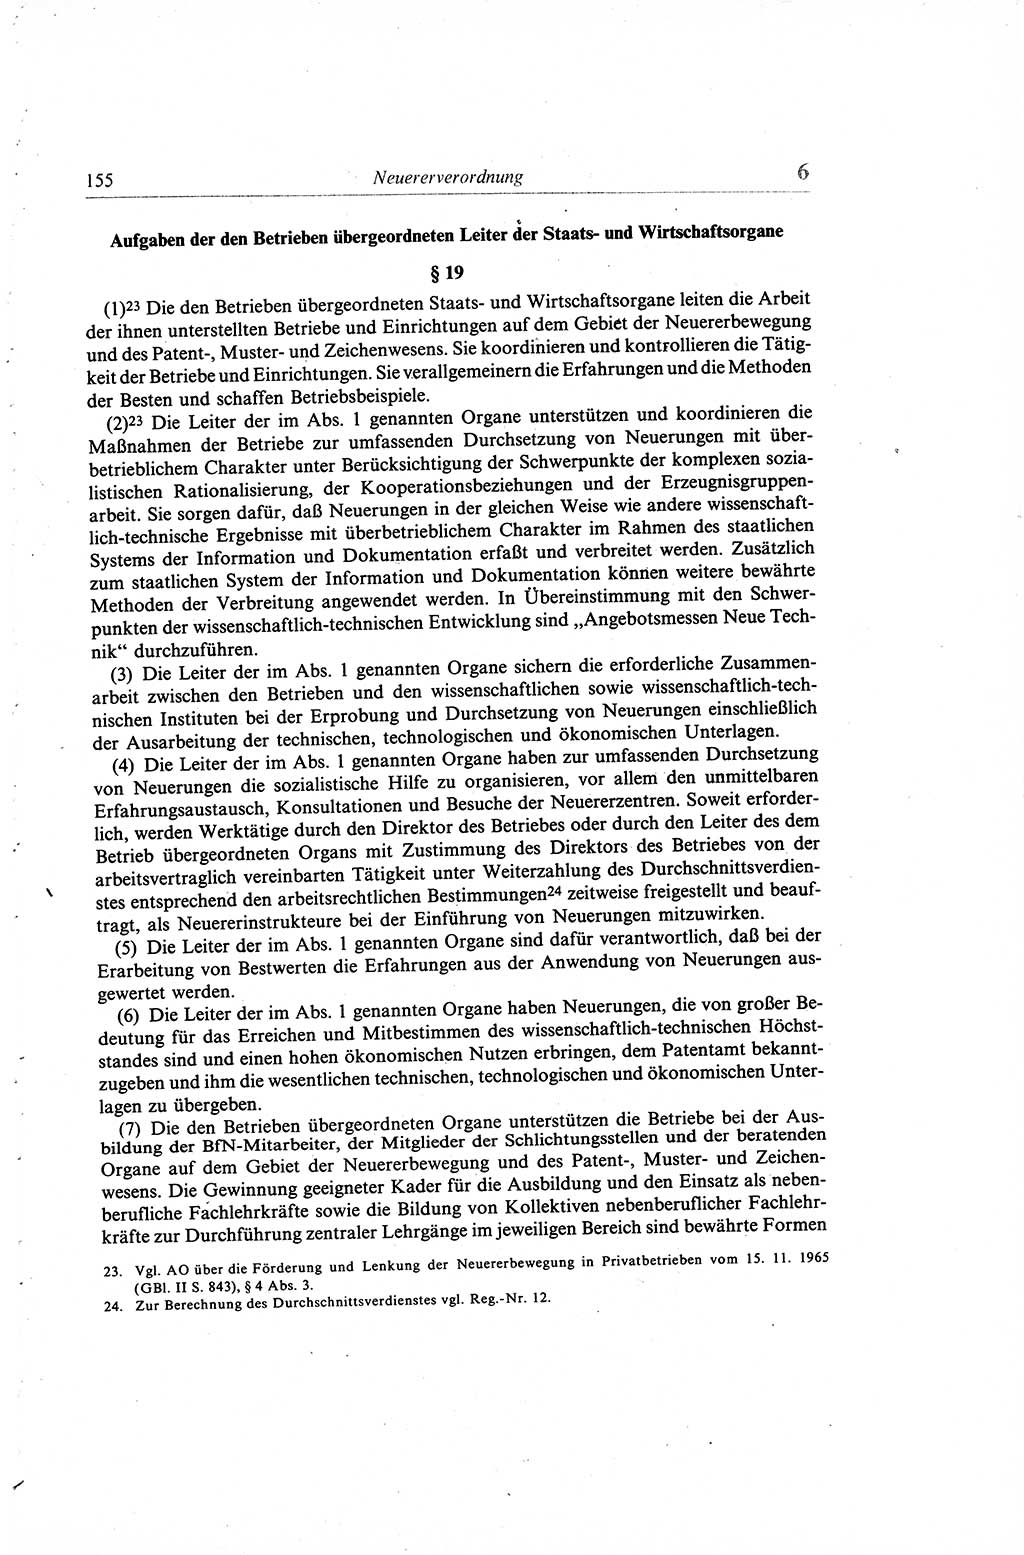 Gesetzbuch der Arbeit (GBA) und andere ausgewählte rechtliche Bestimmungen [Deutsche Demokratische Republik (DDR)] 1968, Seite 155 (GBA DDR 1968, S. 155)